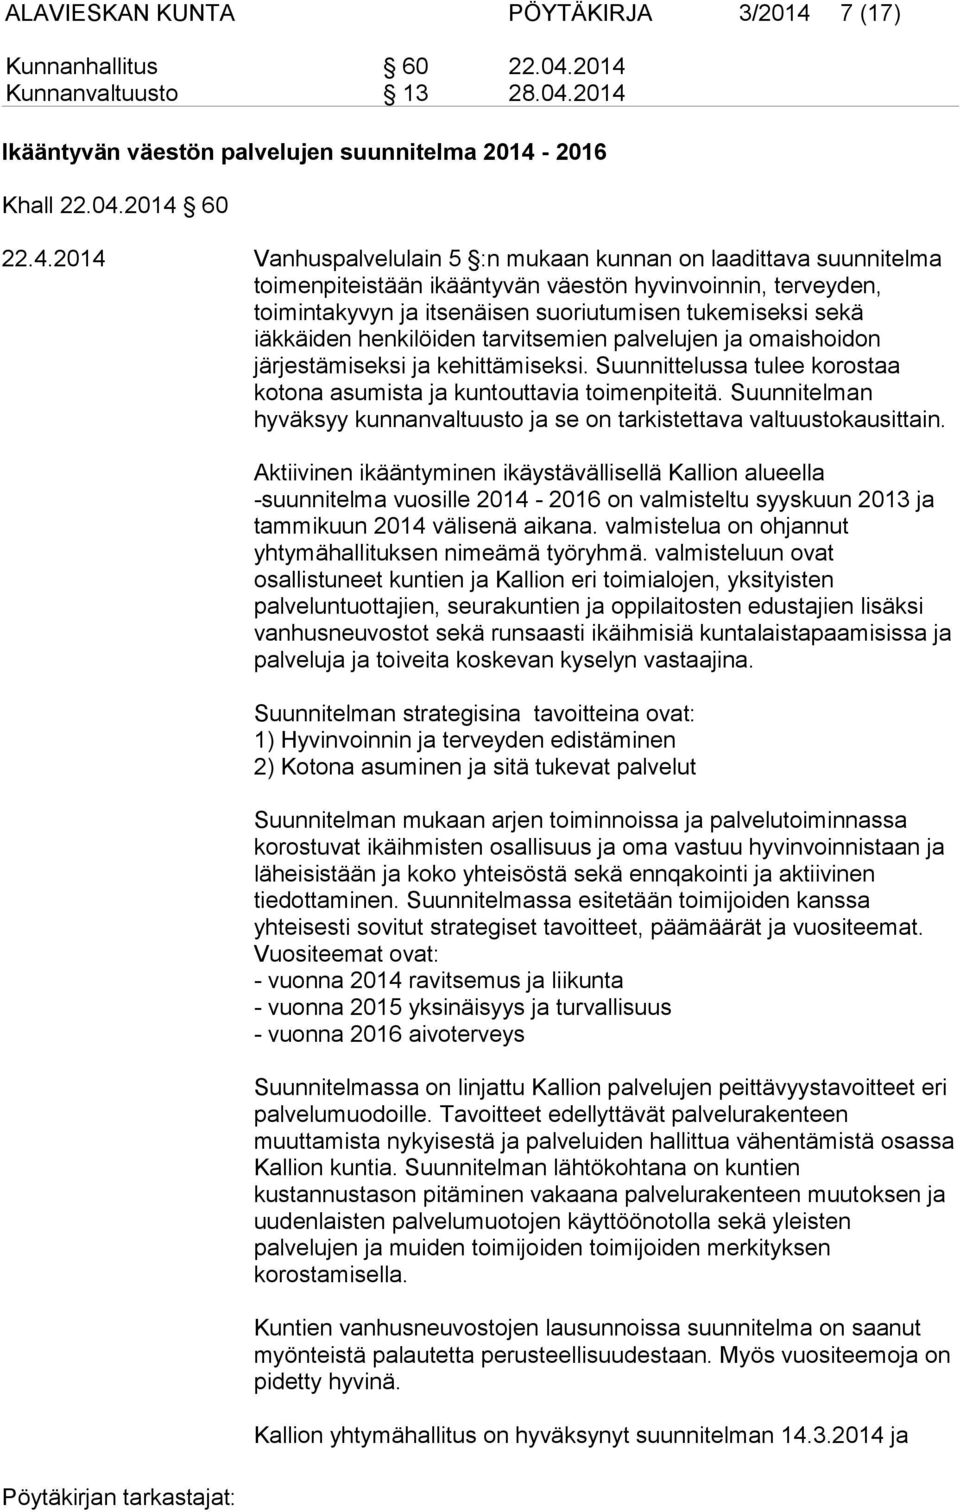 2014 Kunnanvaltuusto 13 28.04.2014 Ikääntyvän väestön palvelujen suunnitelma 2014-2016 Khall 22.04.2014 60 22.4.2014 Vanhuspalvelulain 5 :n mukaan kunnan on laadittava suunnitelma toimenpiteistään